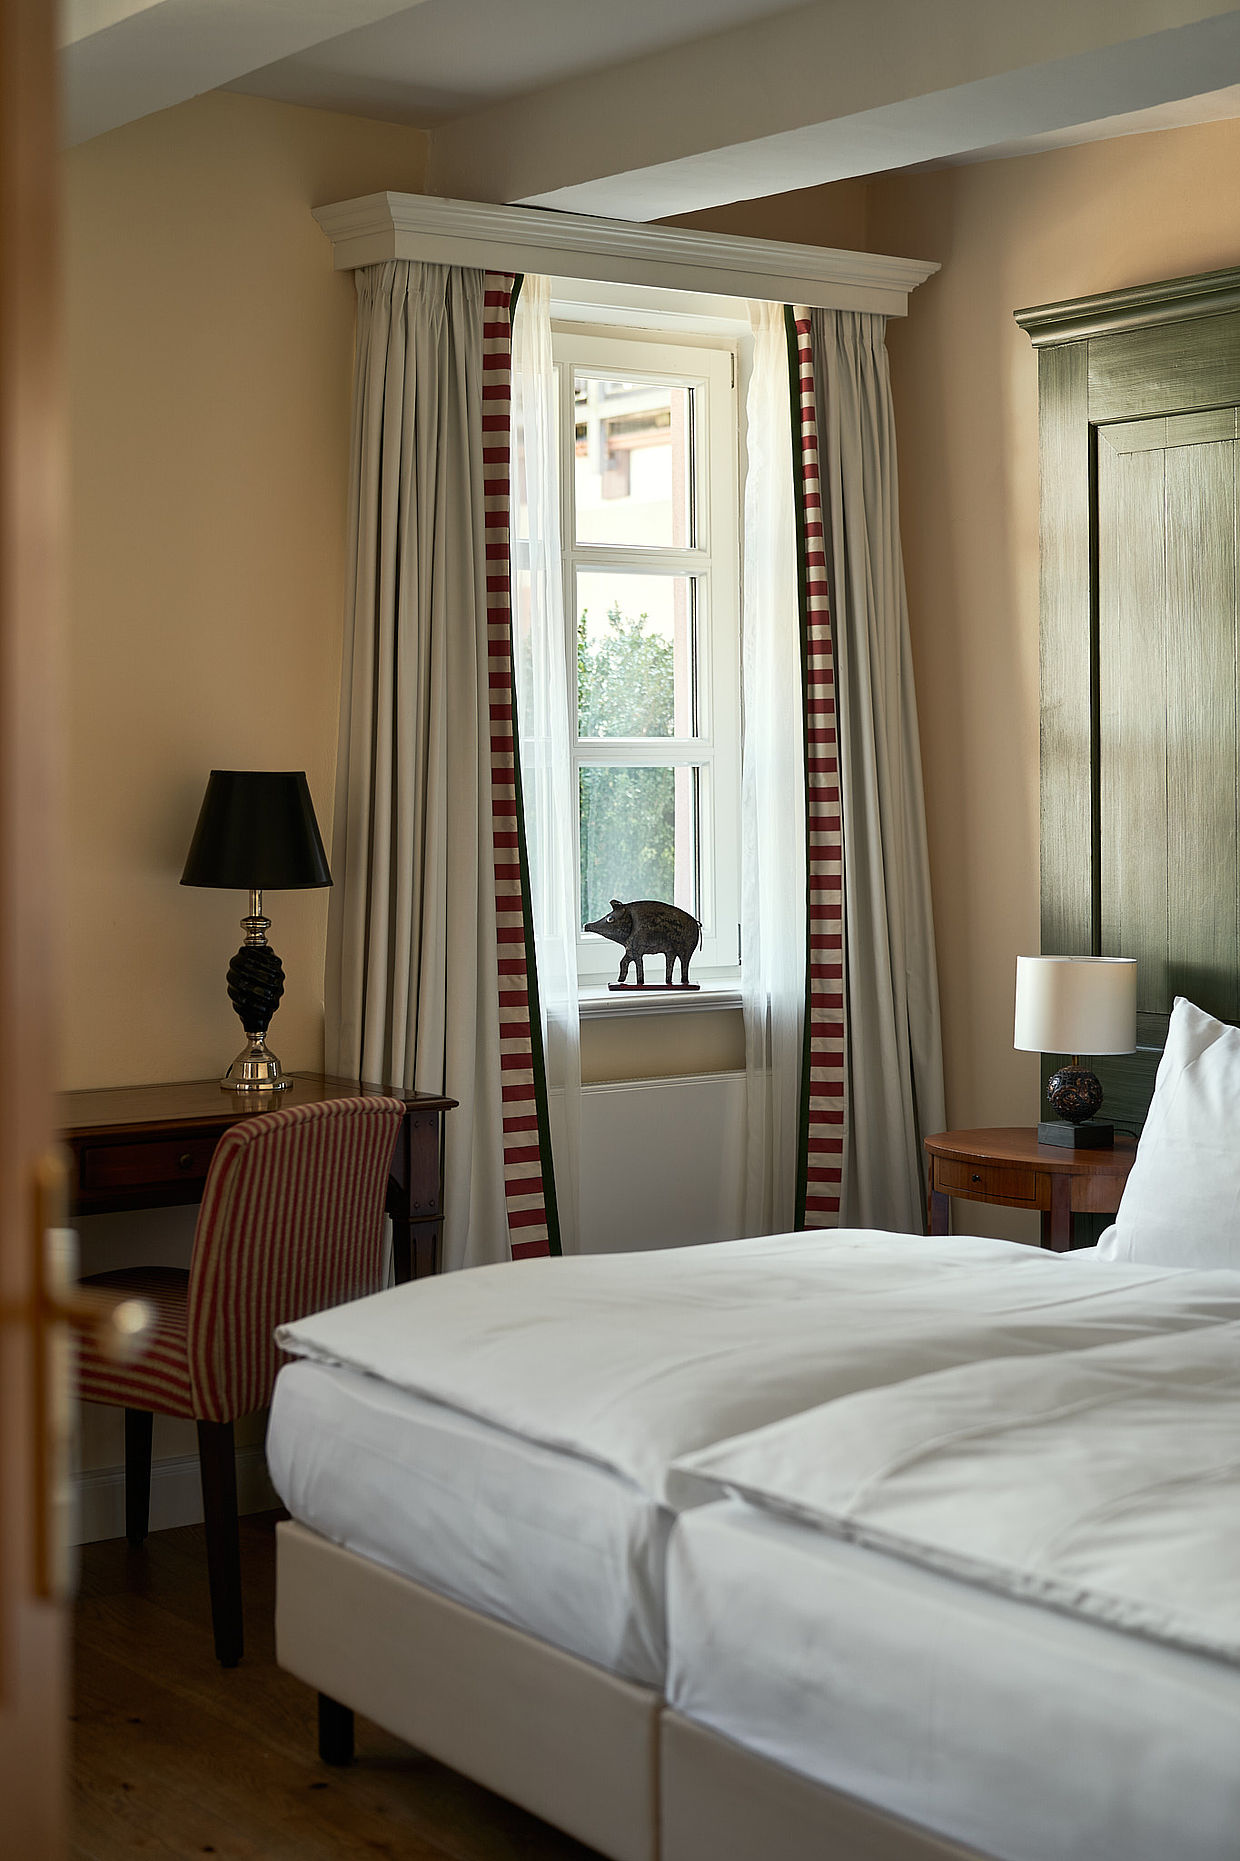 Doppelbett neben einem Fenster mit Vorhängen und einem dekorativen Wildschwein auf der Fensterscheibe